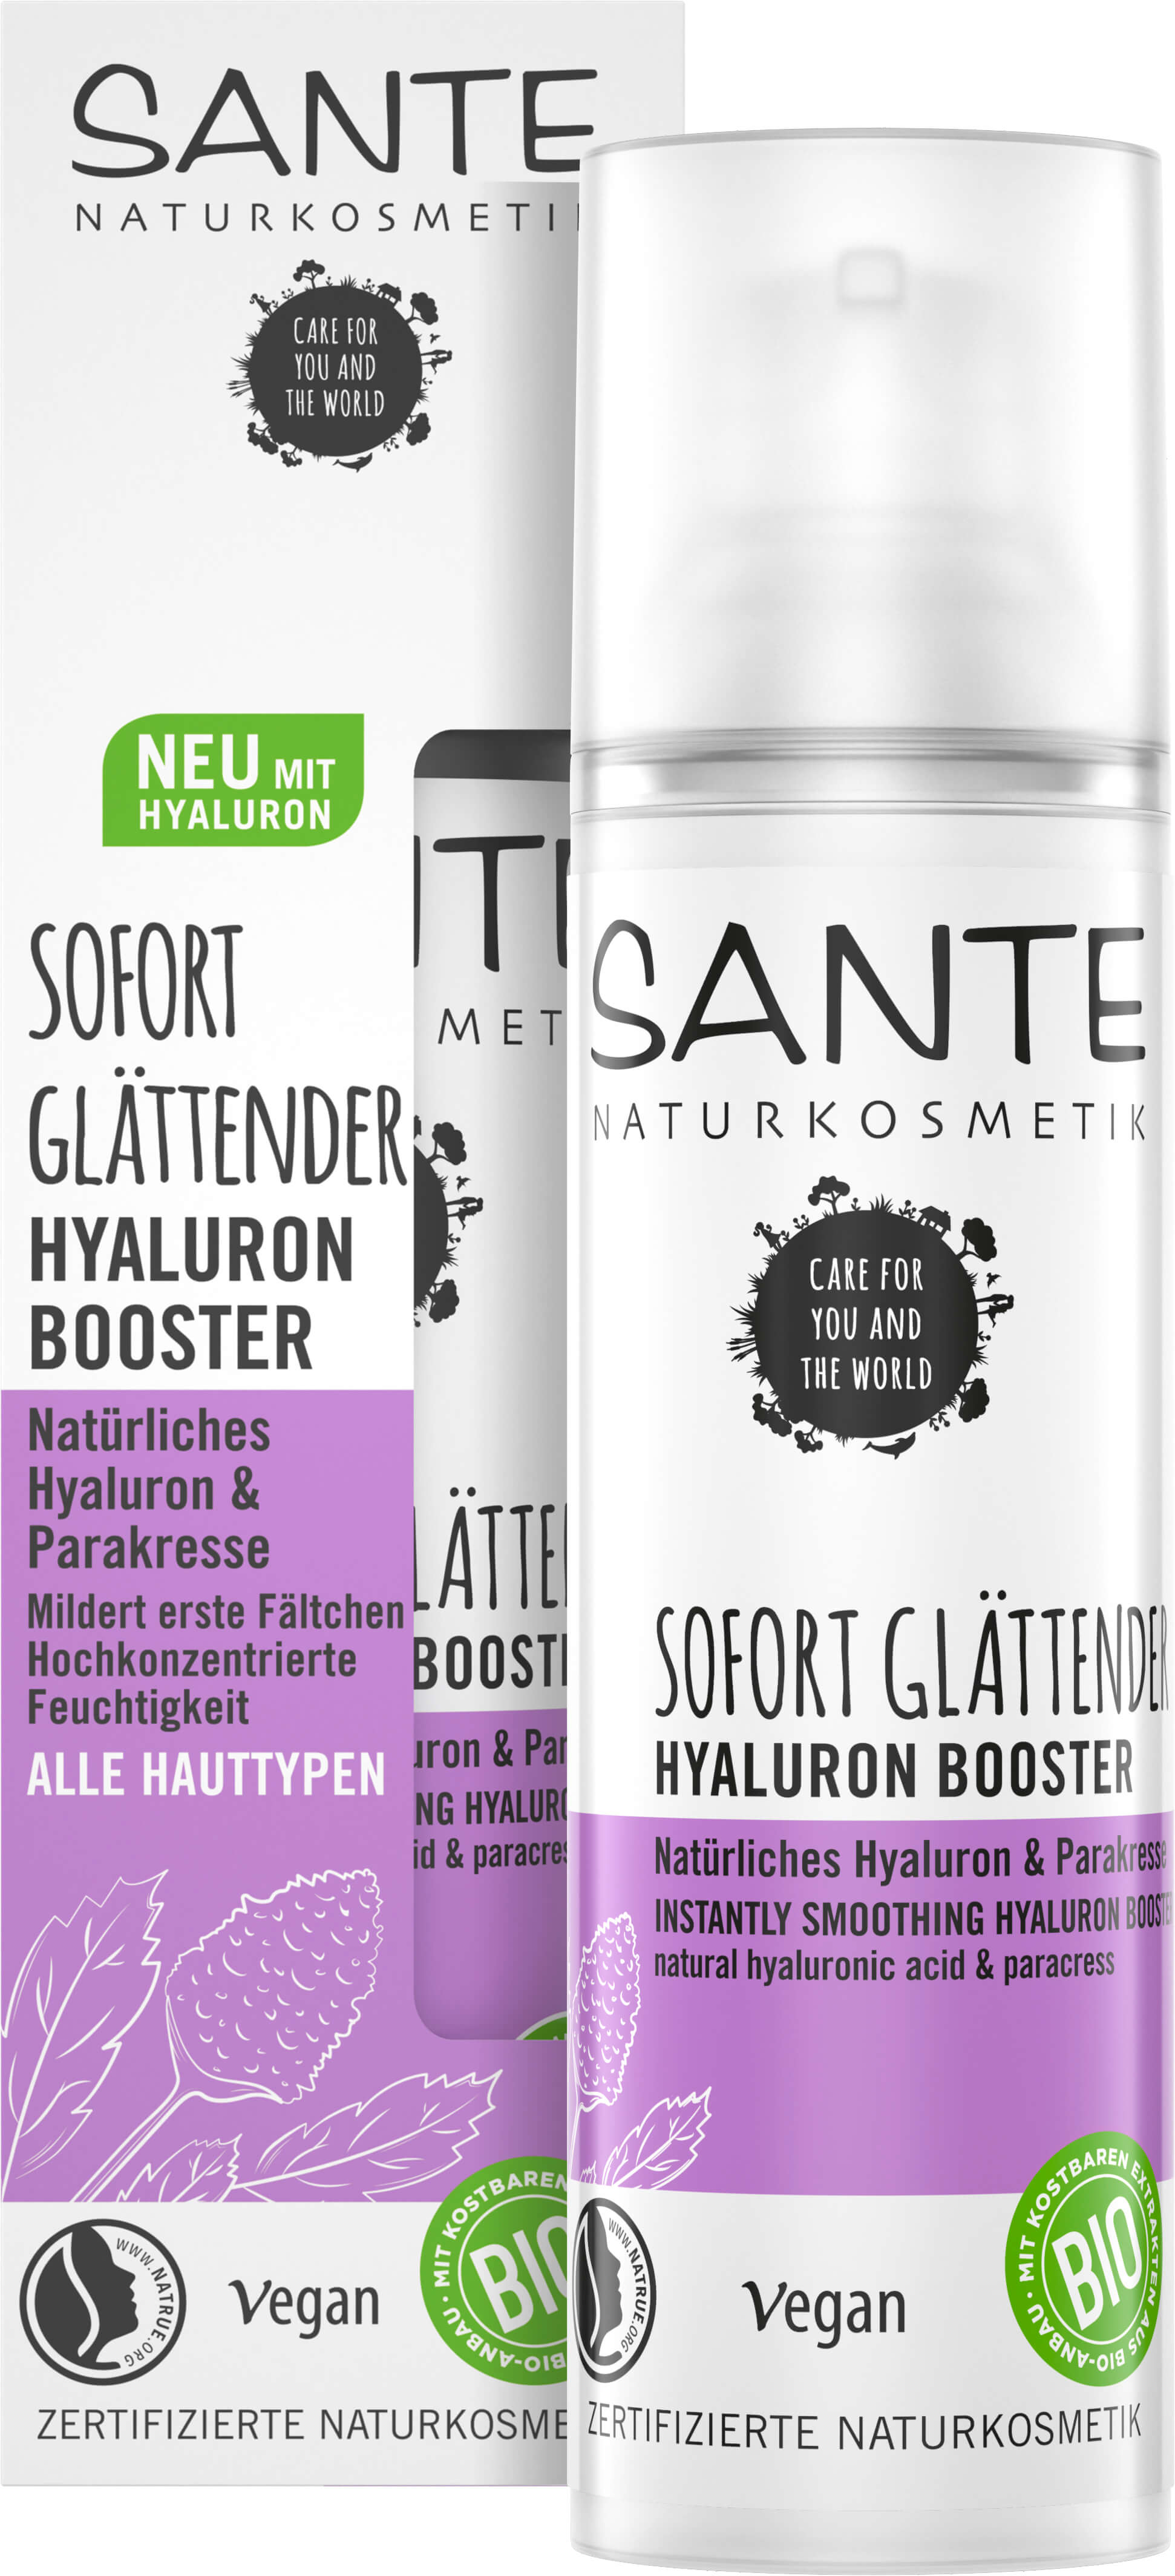 Sofort & | Naturkosmetik Hyaluron SANTE Hyaluron Natürliches Booster Glättender Parakresse